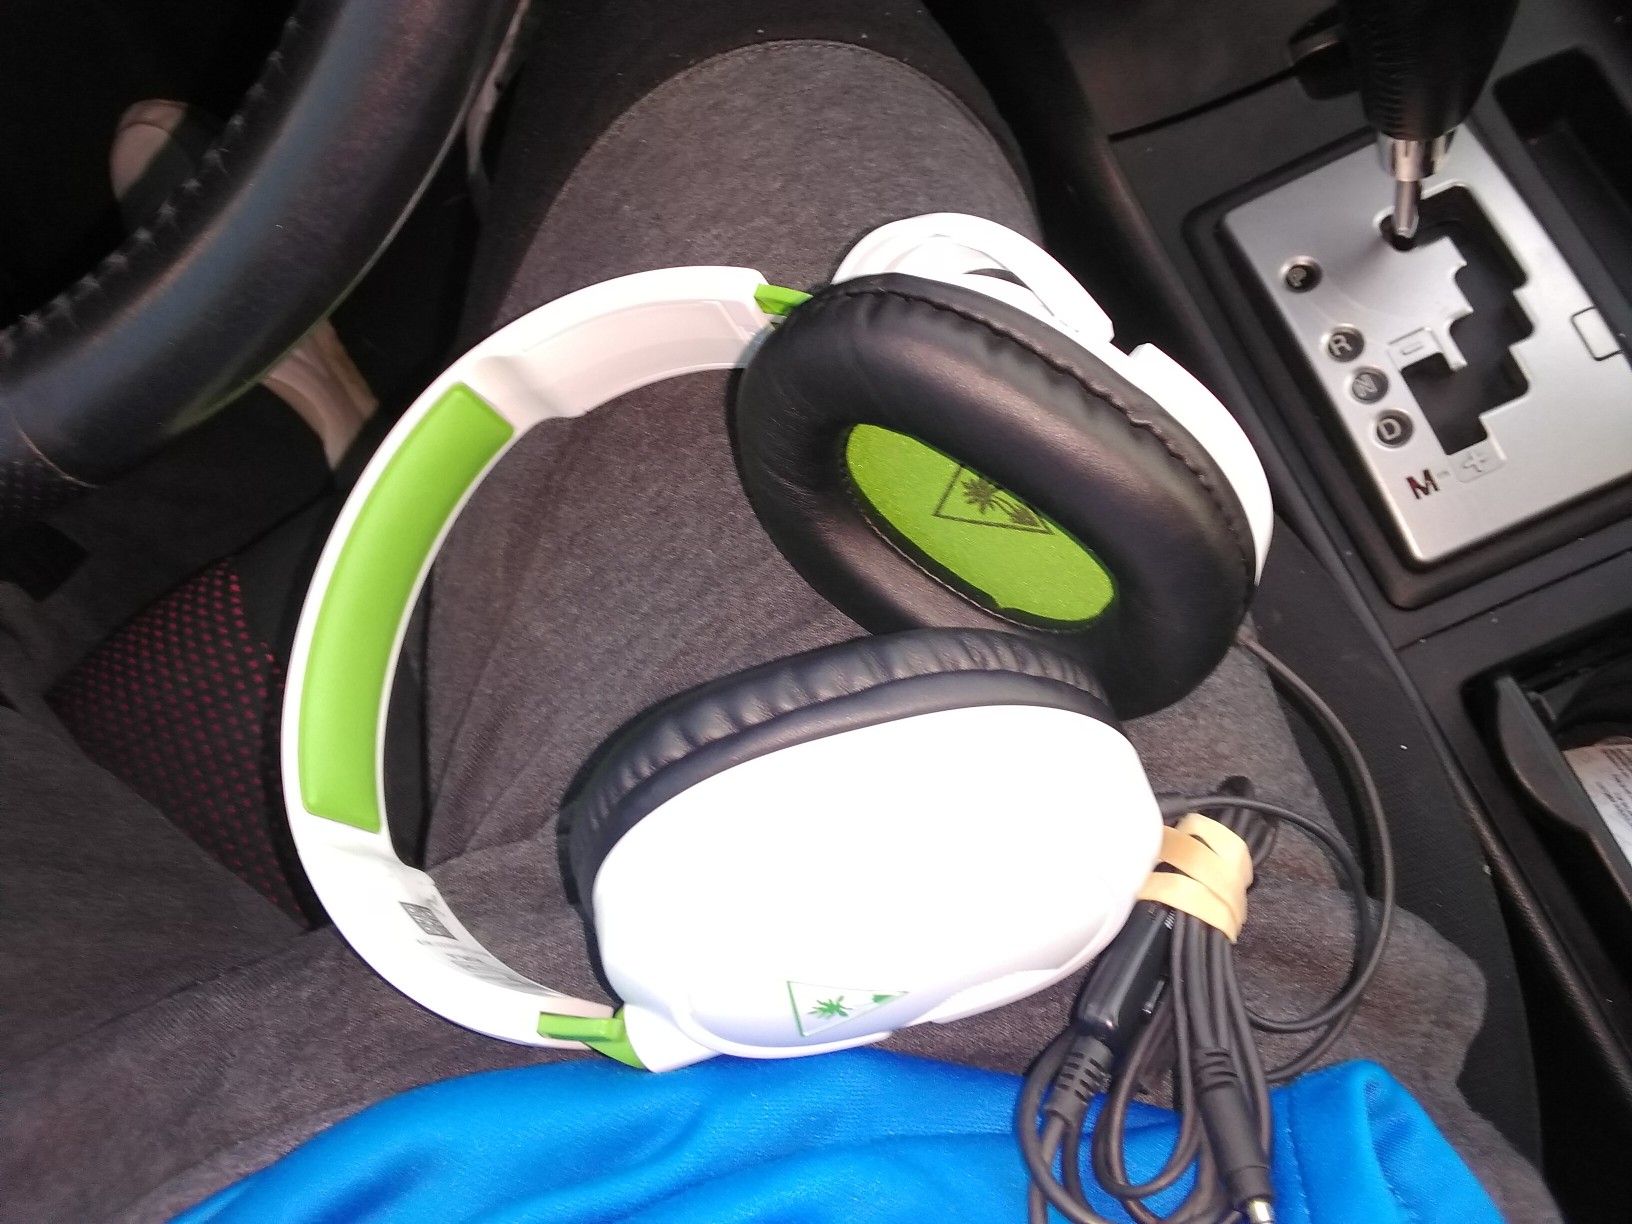 Xbox one headset